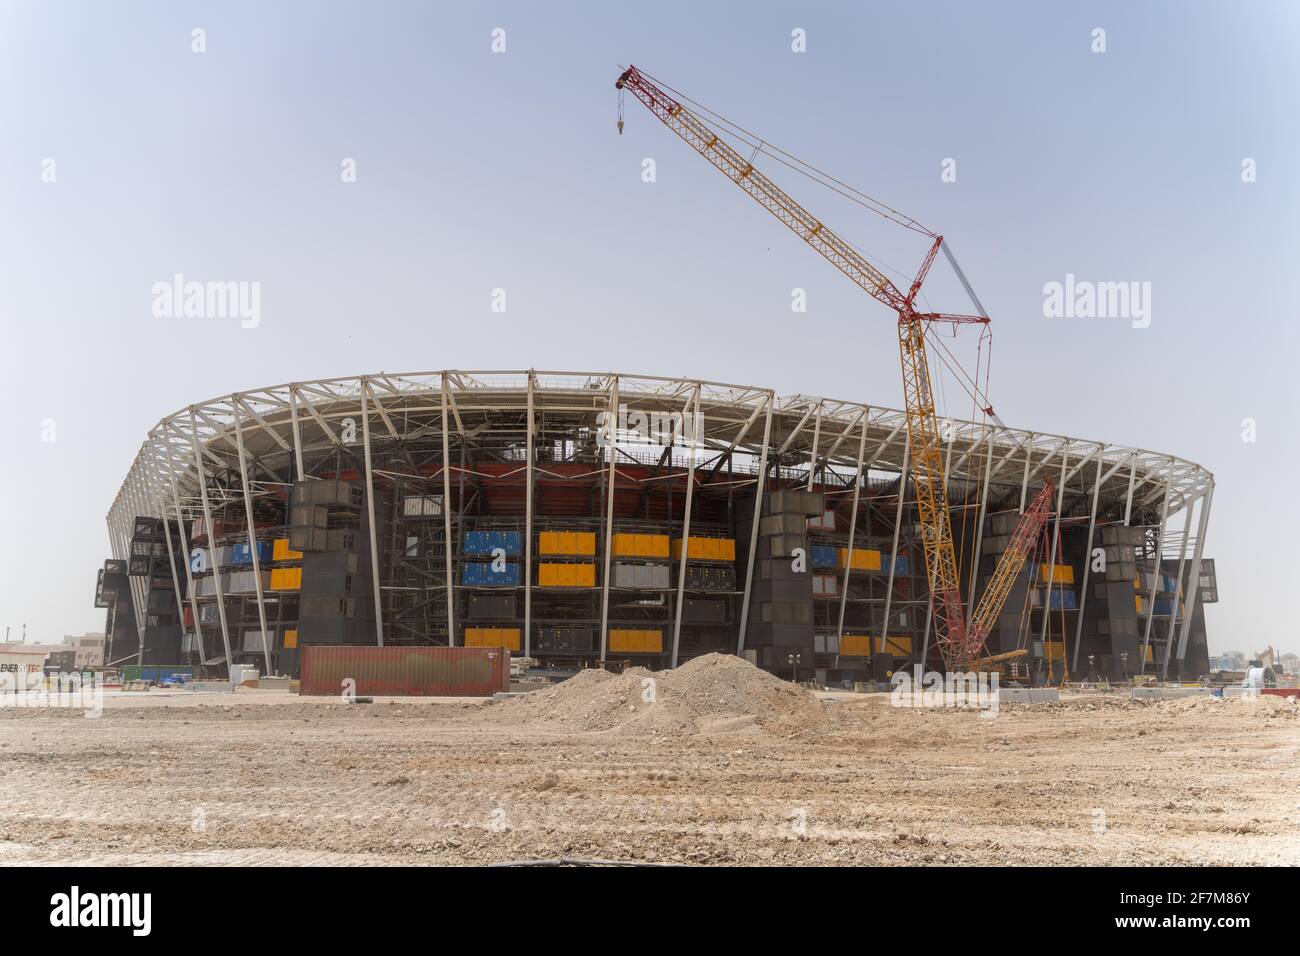 Coupe du monde de la FIFA 2022, Qatar - le stade Ras Abu Aboud a été construit à l'aide de conteneurs d'expédition, de sièges amovibles et d'autres « éléments de construction » modulaires. Le stade sera entièrement démantelé et réaffecté après la coupe du monde de la FIFA, Qatar 2022. Ses pièces seront utilisées dans d'autres projets sportifs ou non sportifs, établissant une nouvelle norme en matière de développement durable et introduisant de nouvelles idées audacieuses dans la planification de l'héritage des tournois. Banque D'Images